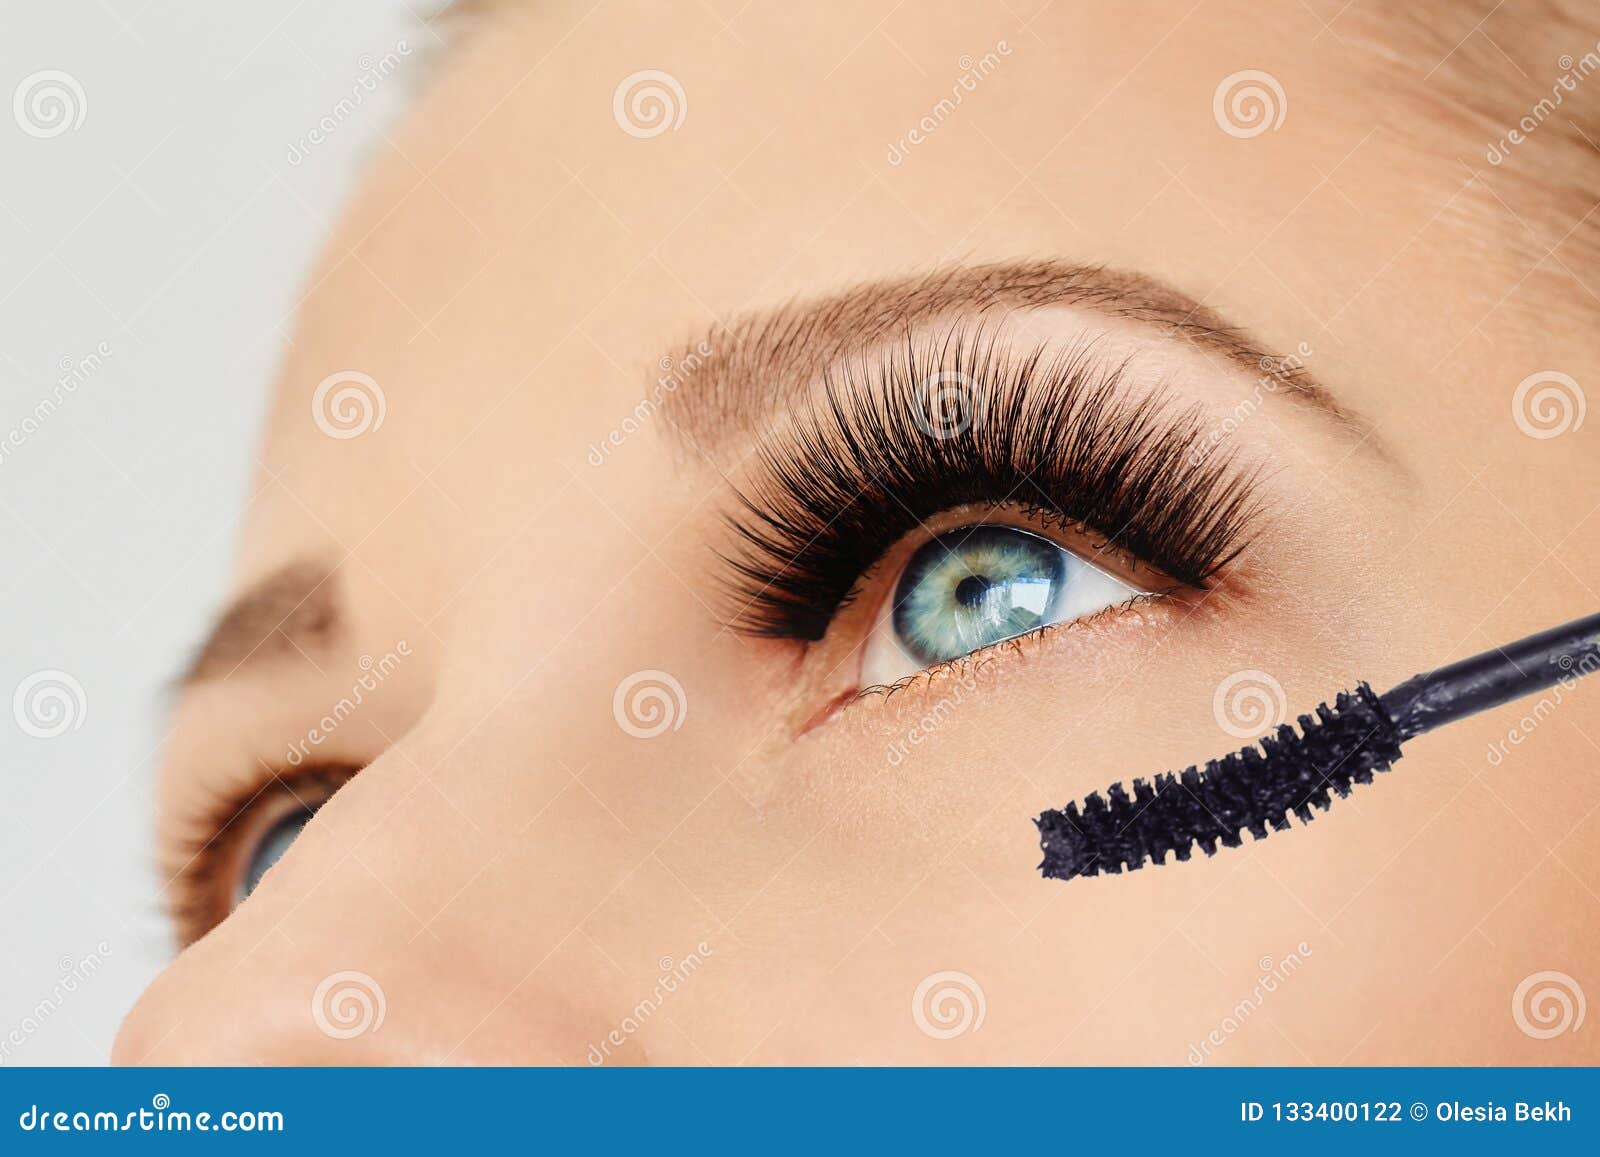 female eye with extreme long eyelashes and brush of mascara. make-up, cosmetics, beauty